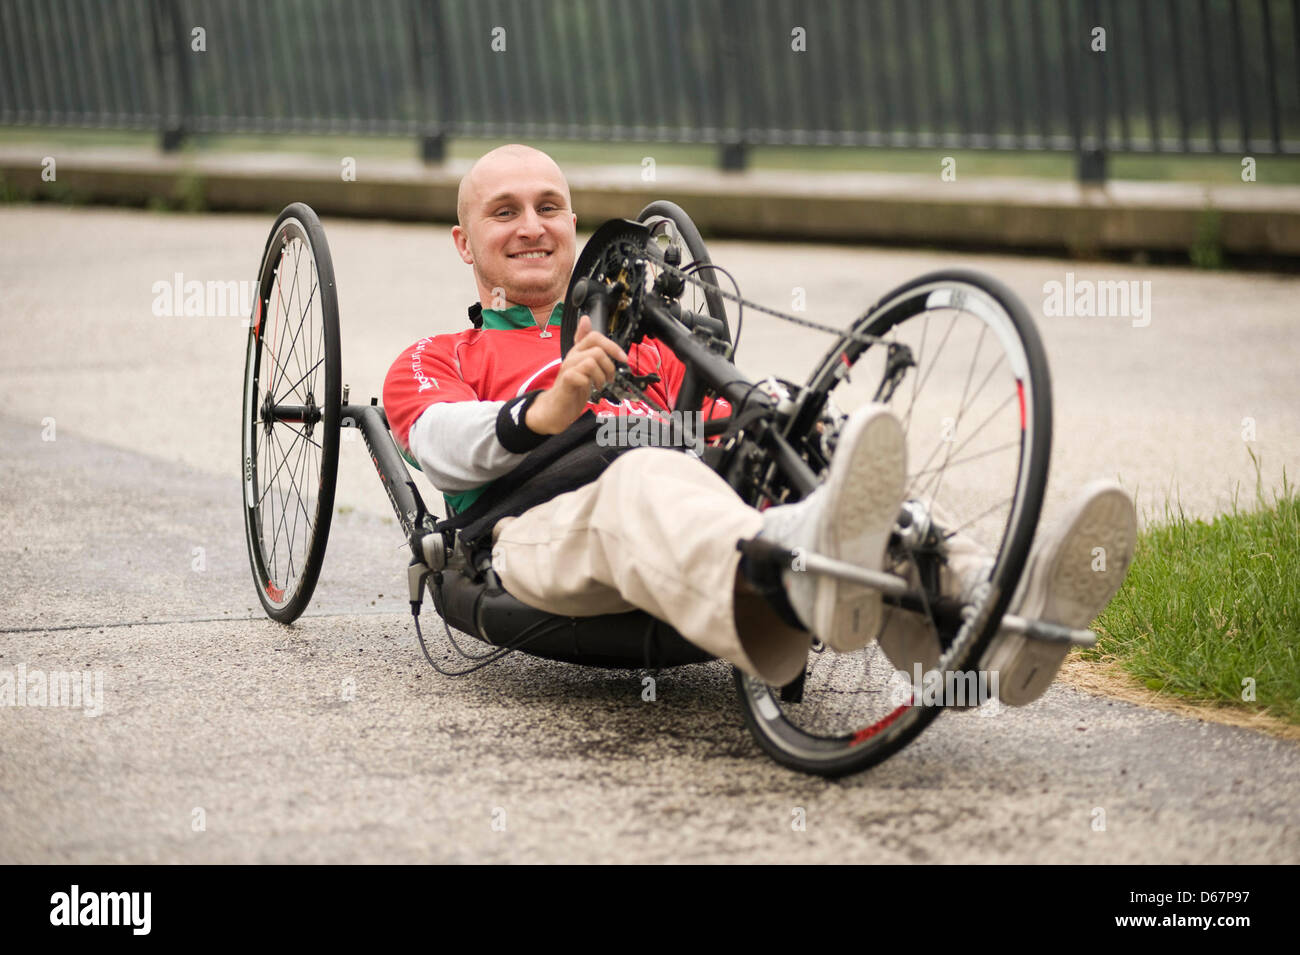 Athlète handicapée Jens Sauerbier réside dans son handbike à Magdeburg,  Allemagne, 20 juin 2012. Il a été dans un fauteuil roulant depuis un  accident de voiture, mais sa fascination pour le sport